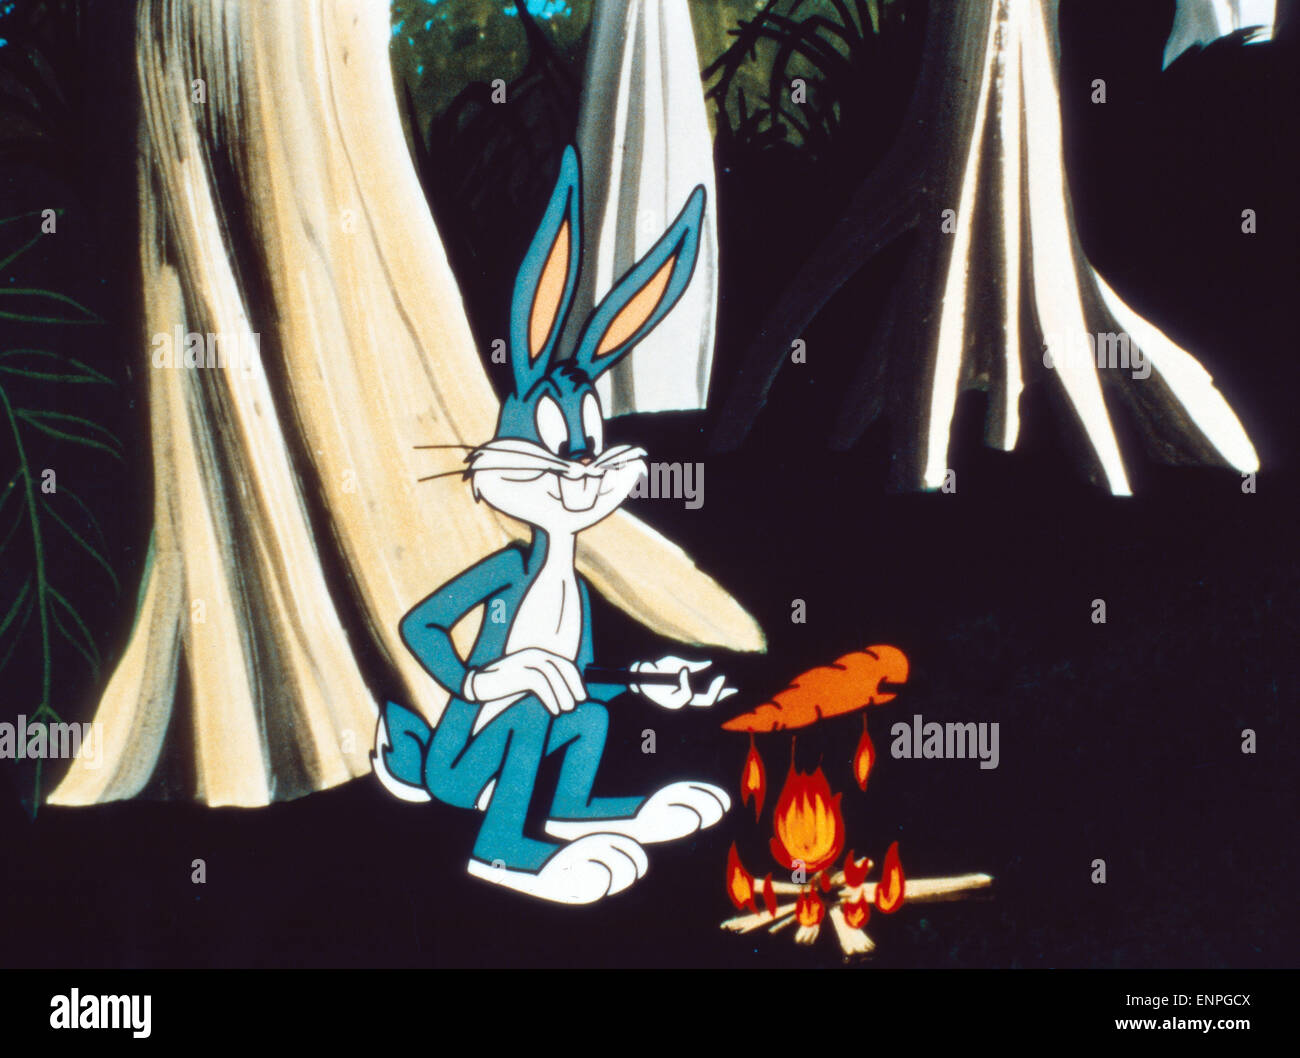 Los Bugs Bunny/Película Road-Runner, aka: Bugs Bunnys wilde verwegene Jagd, USA 1979, Regie: Chuck Jones, Darsteller: Bugs Bunny Foto de stock